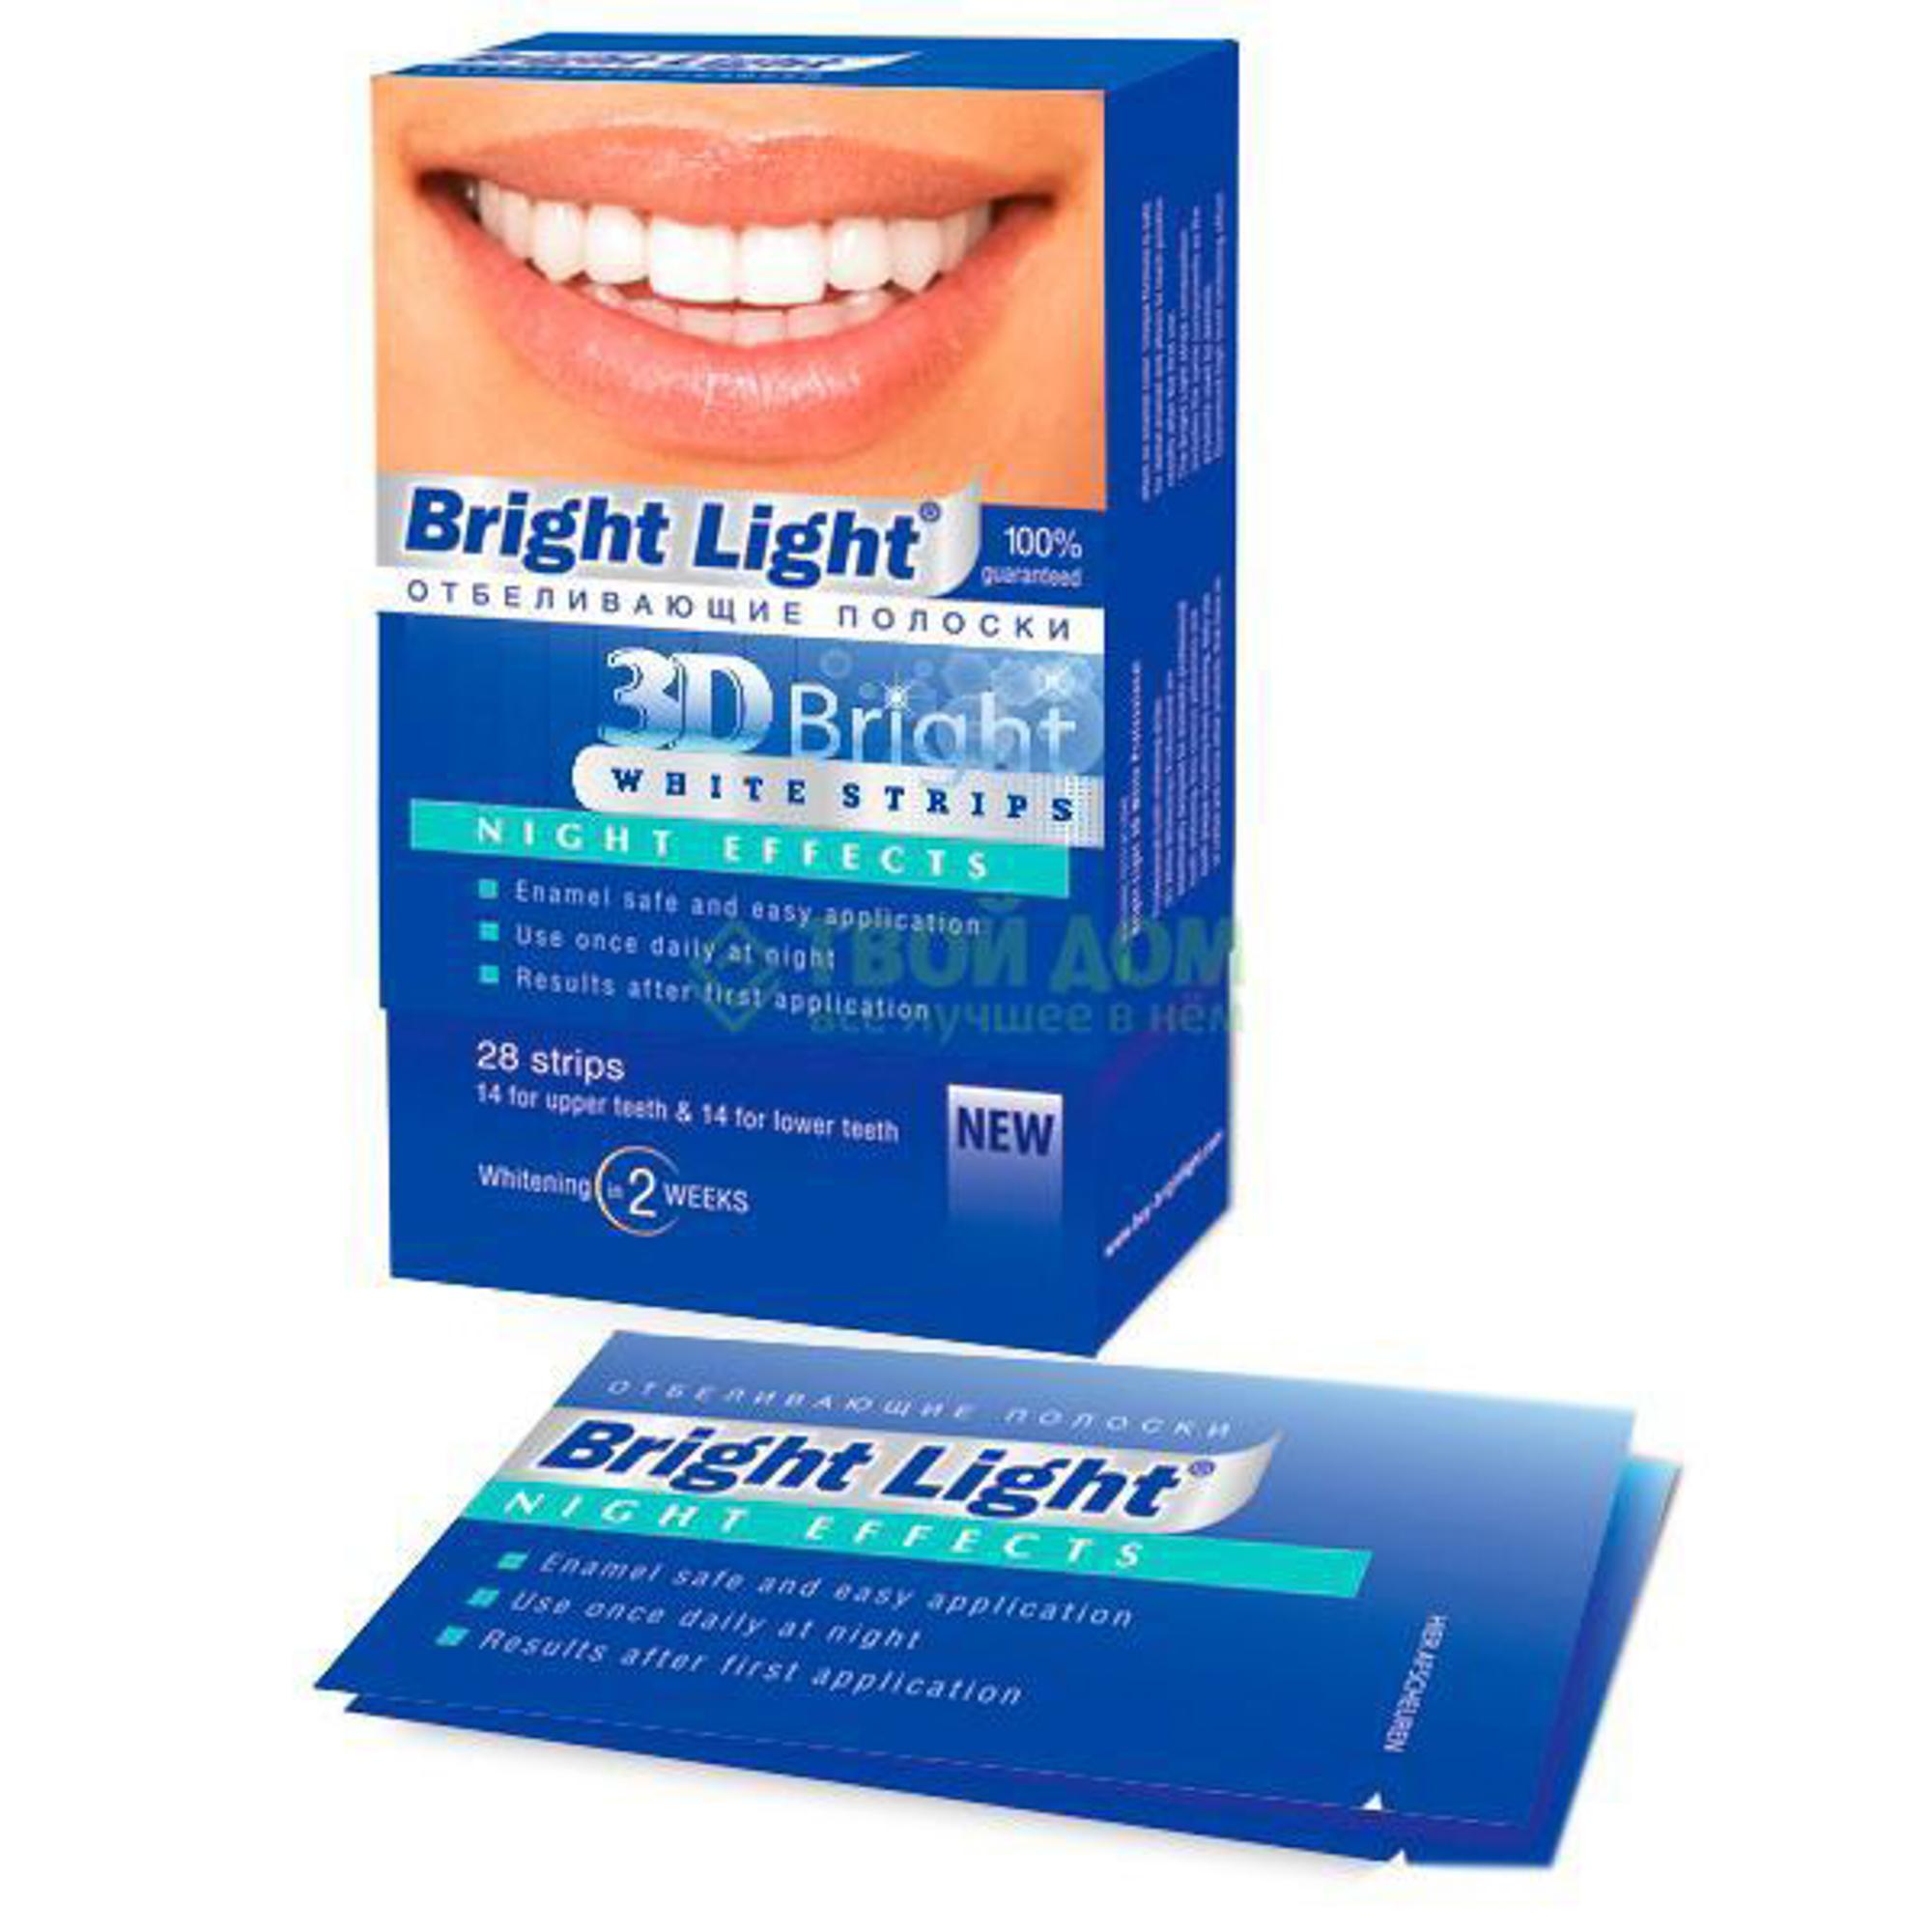 Отбеливание зубов отзывы цены. Bright Light отбеливающие полоски 3d Bright perfect Effects. Bright Light "3d Bright professional Effects". Полоски для отбеливания зубов 3д.